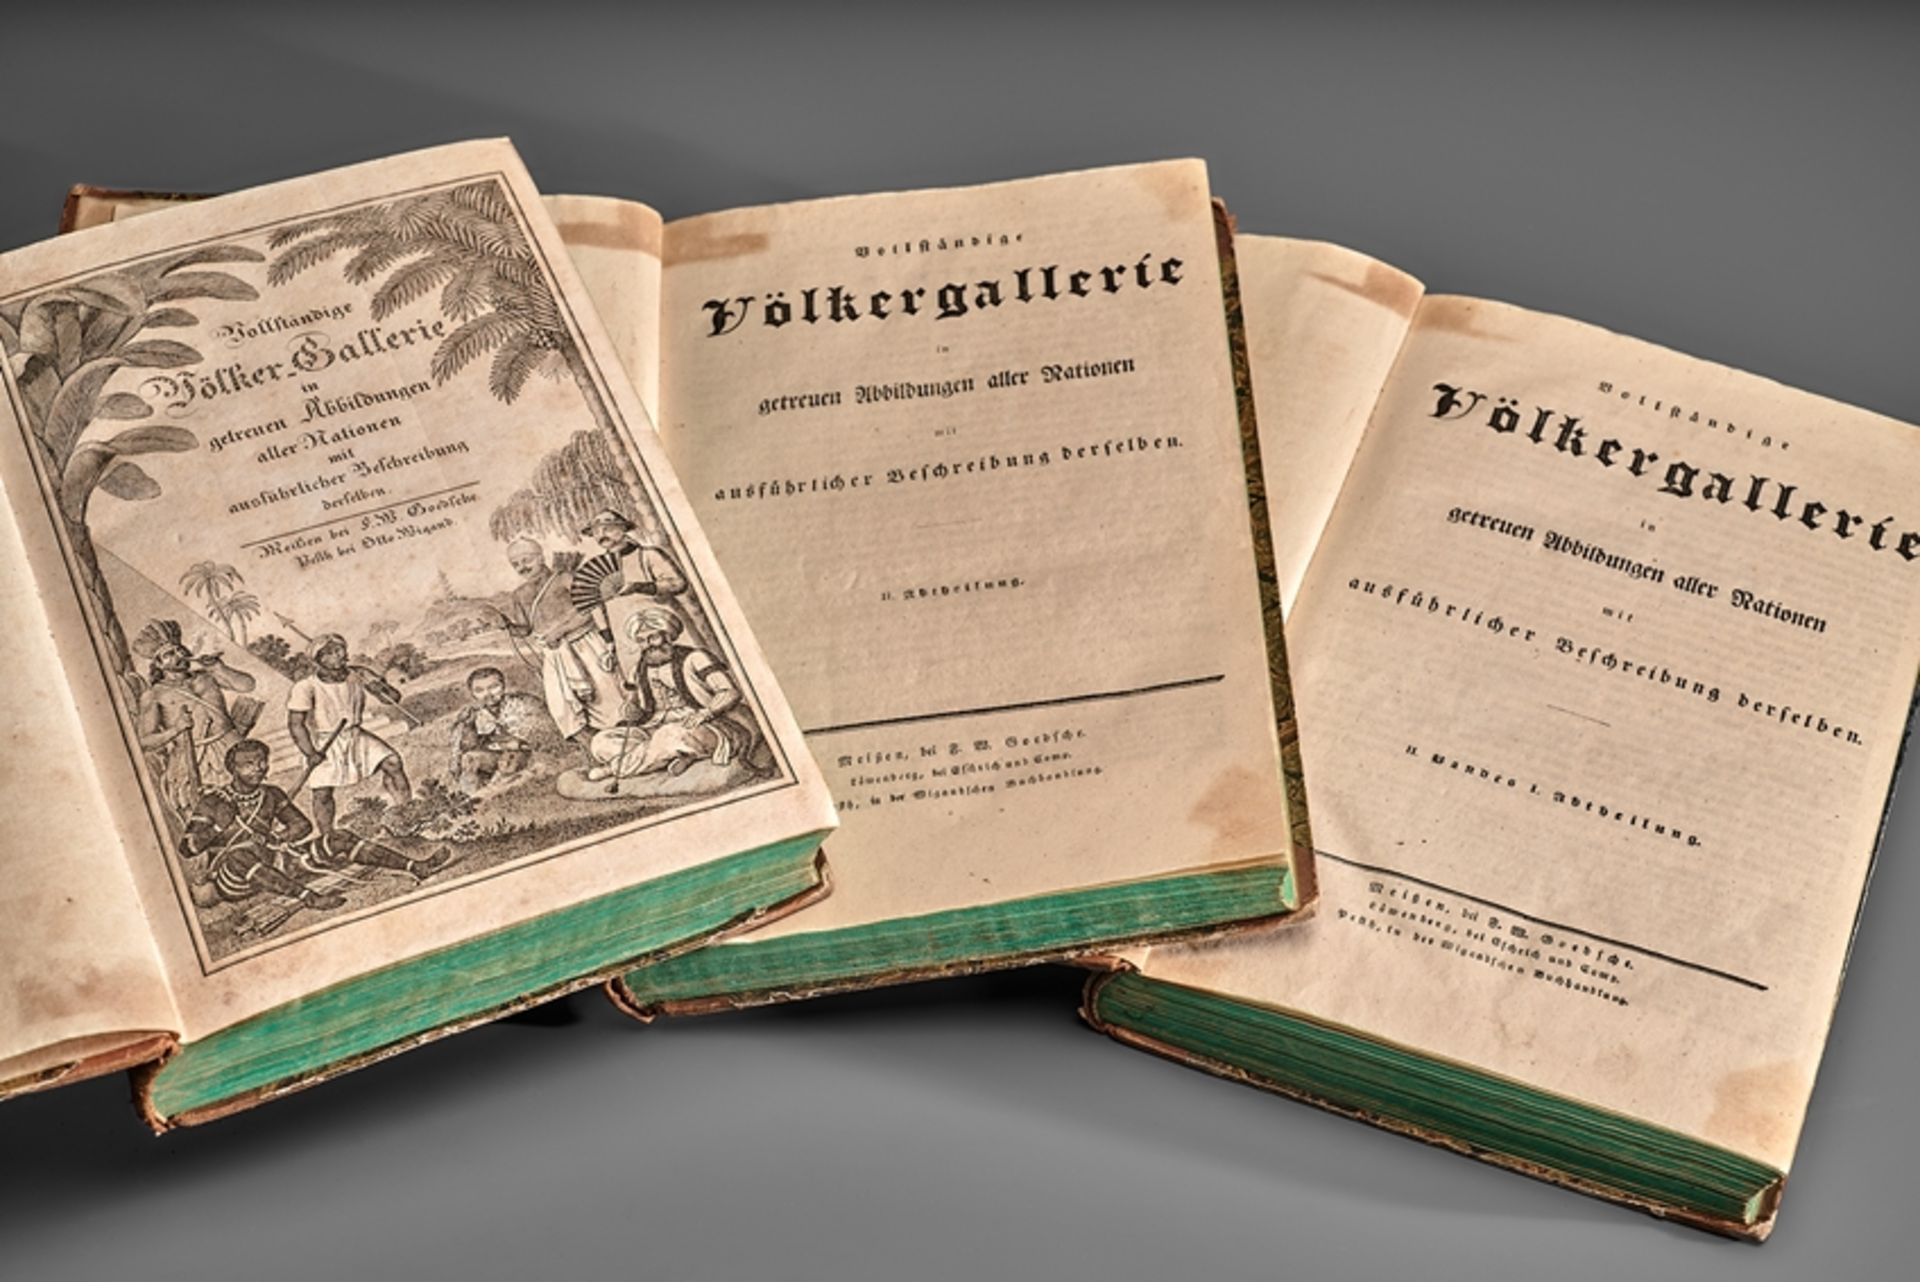 Ethnologie. Vollständige Völkergalerie in getreuen Abbildungen aller Nationen. 1. Bd. I. Abth. 'As - Image 2 of 4